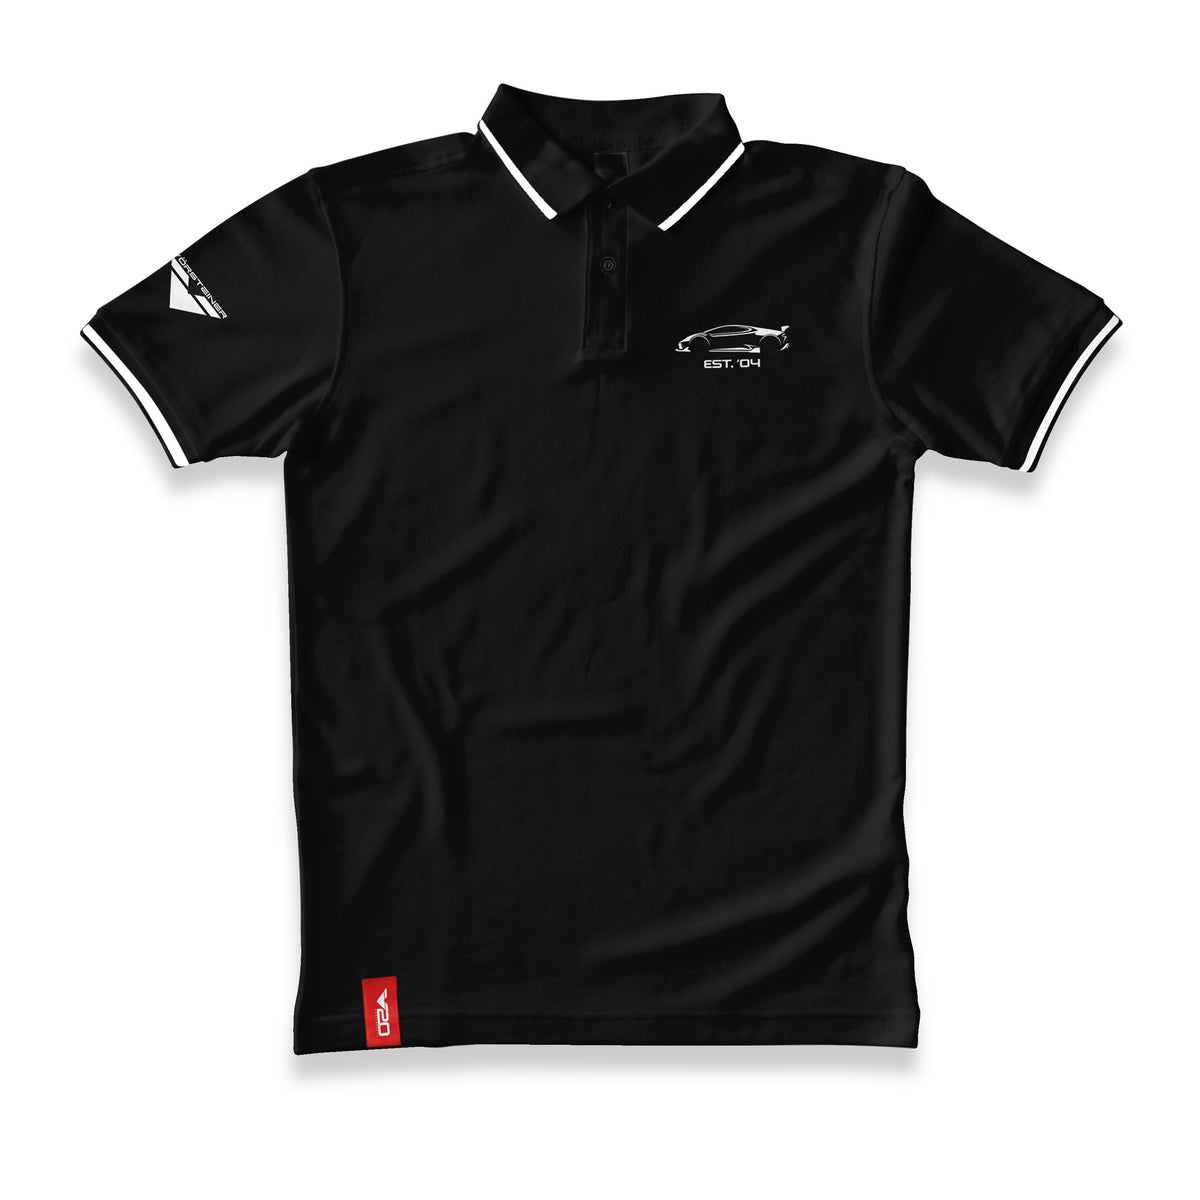 Vorsteiner V20 Polo Shirt - Black with White Stripe - Vorsteiner Wheels  - Apparel - [tags]